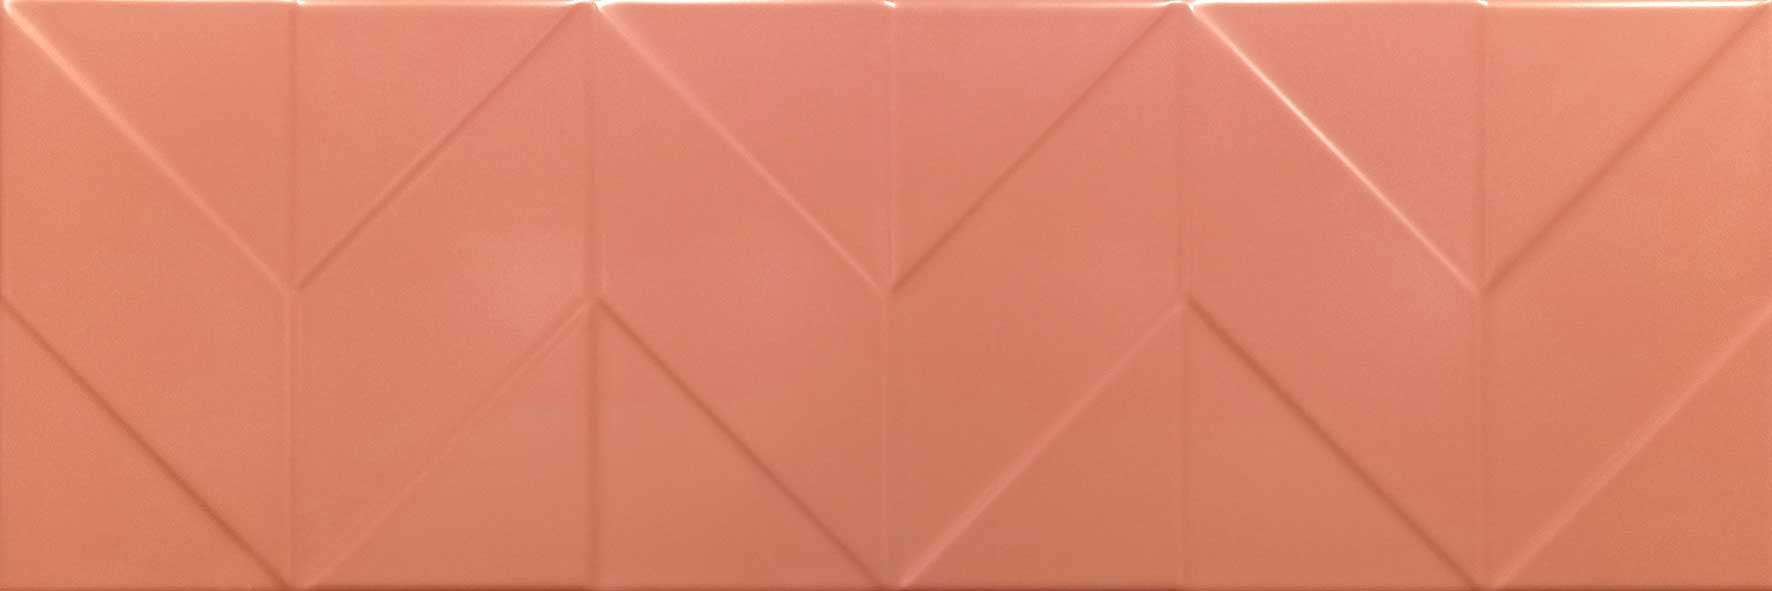 Керамическая плитка Керамин Танага 6Д Бежевый, цвет бежевый, поверхность сатинированная, прямоугольник, 250x750